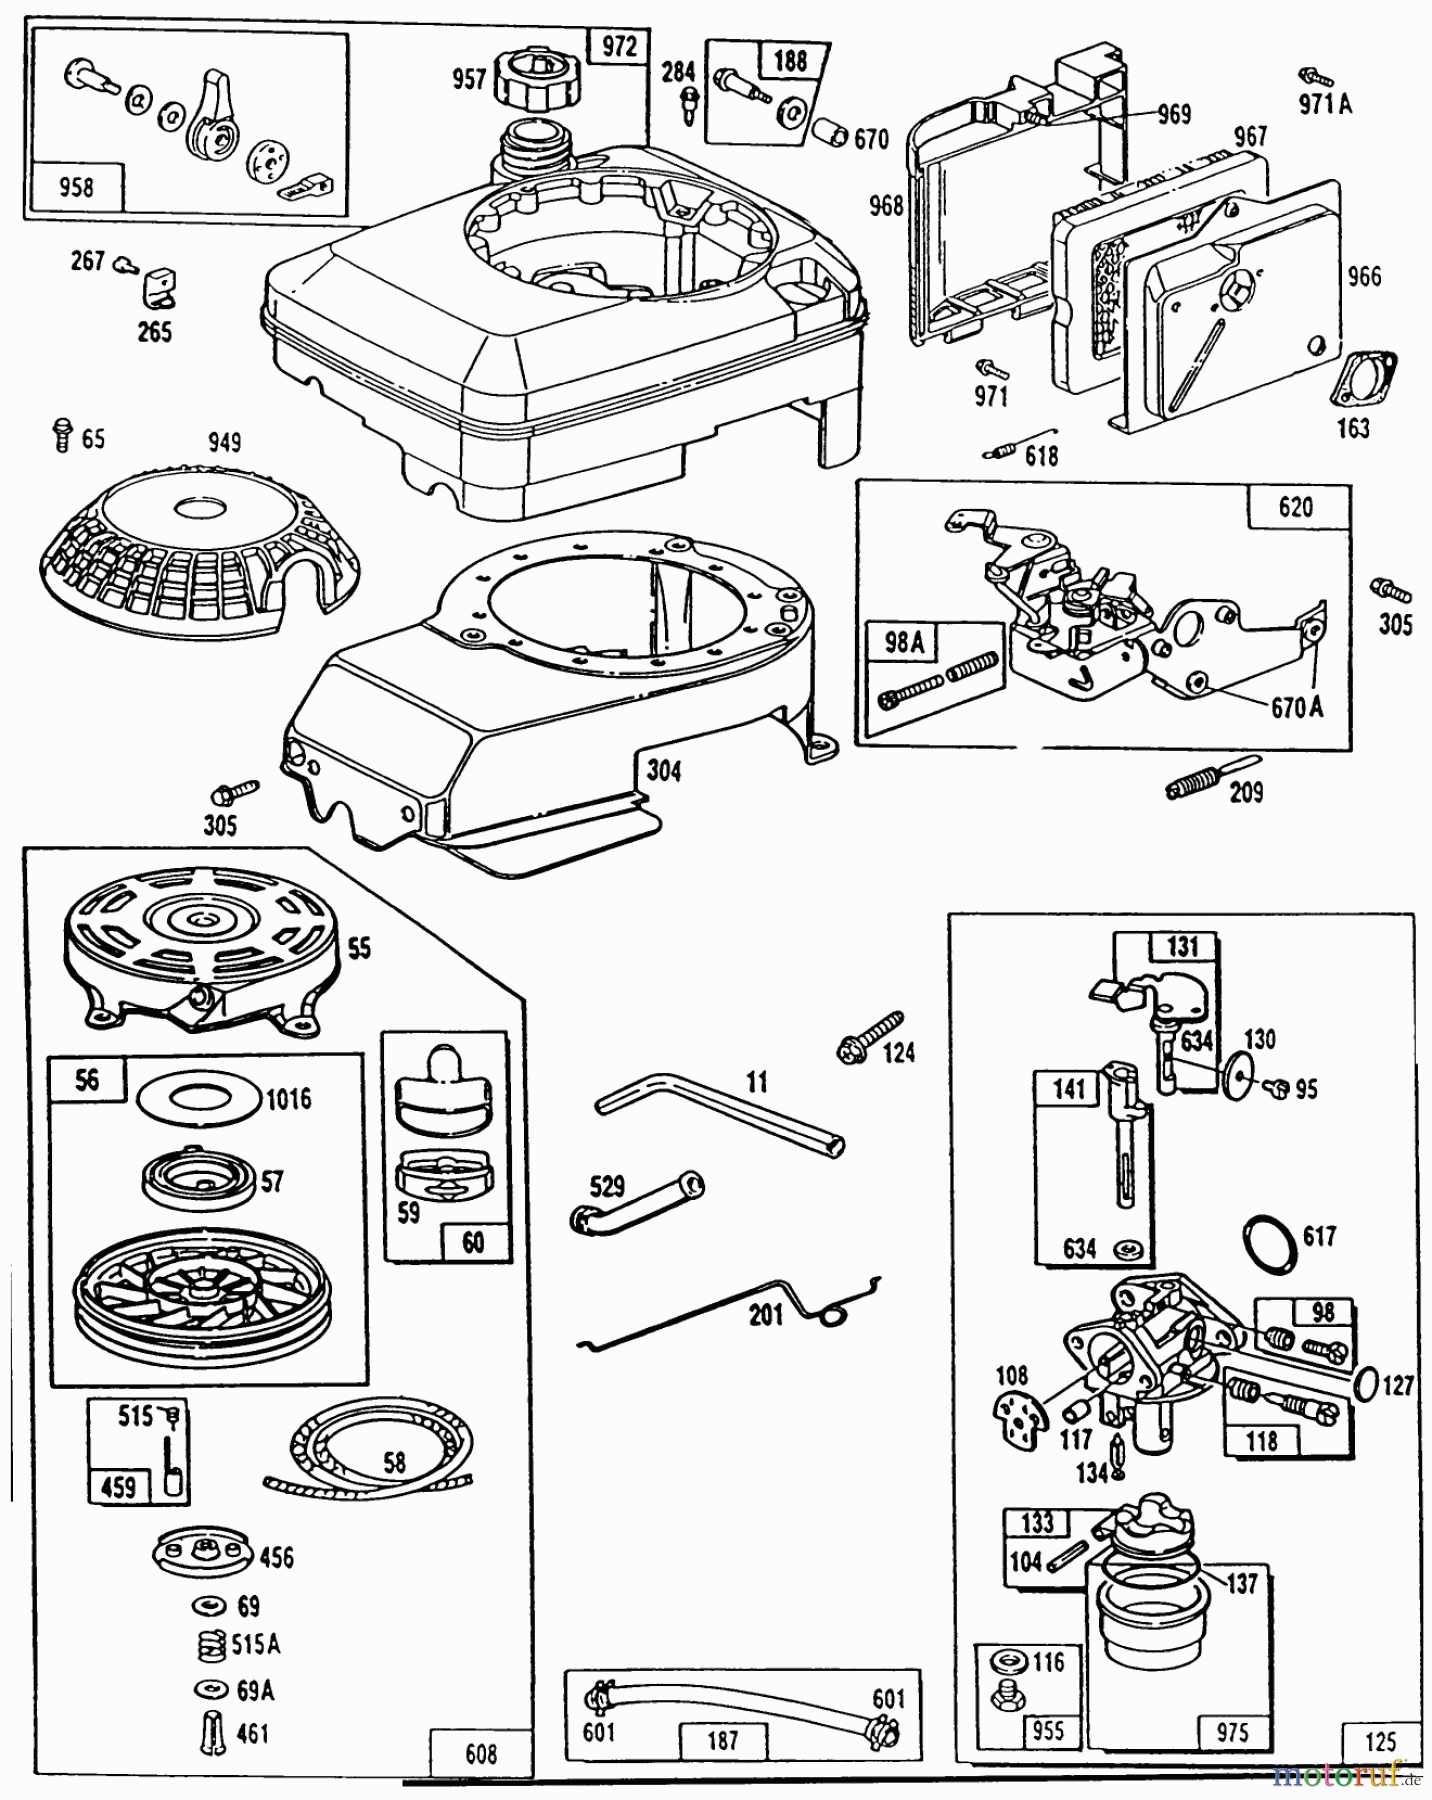  Toro Neu Mowers, Walk-Behind Seite 1 20561 - Toro Lawnmower, 1990 (0000001-0999999) ENGINE MODEL NO. 124702-3115-01